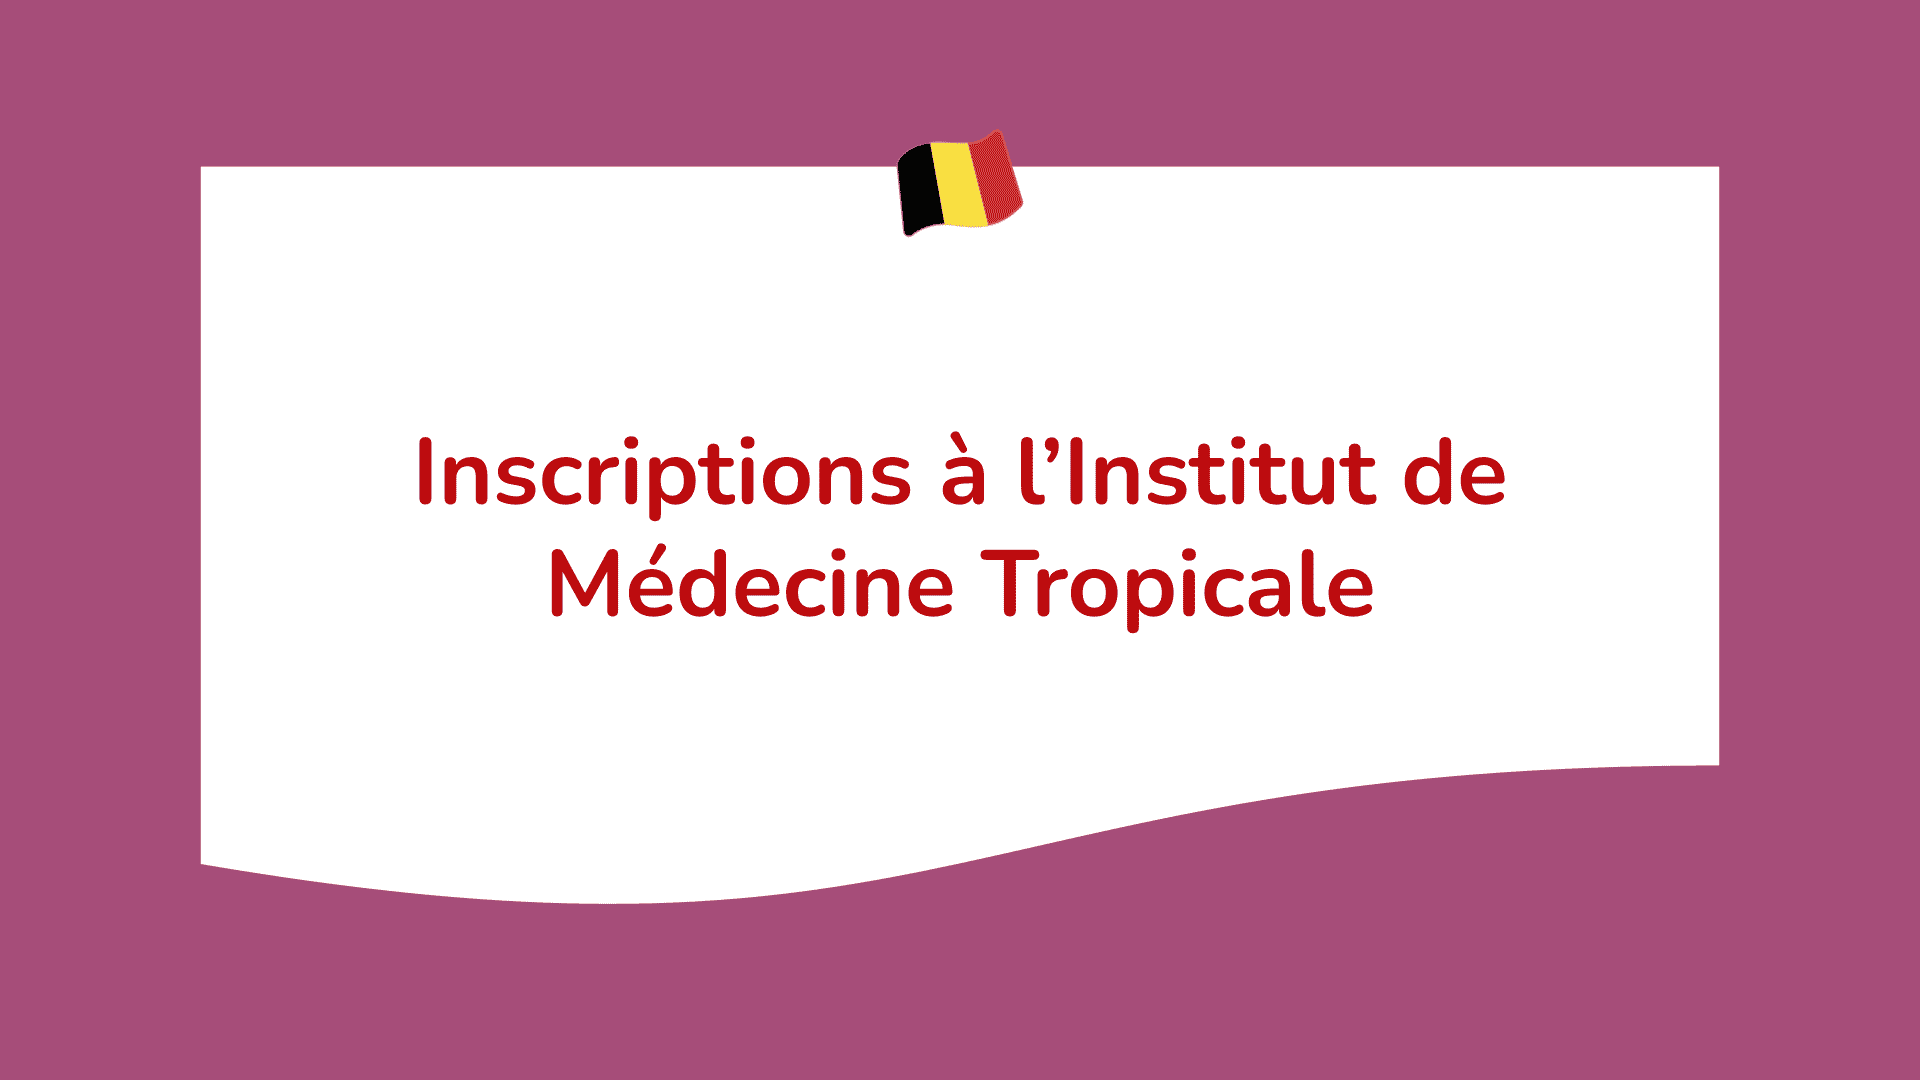 Inscriptions à l’Institut de Médecine Tropicale